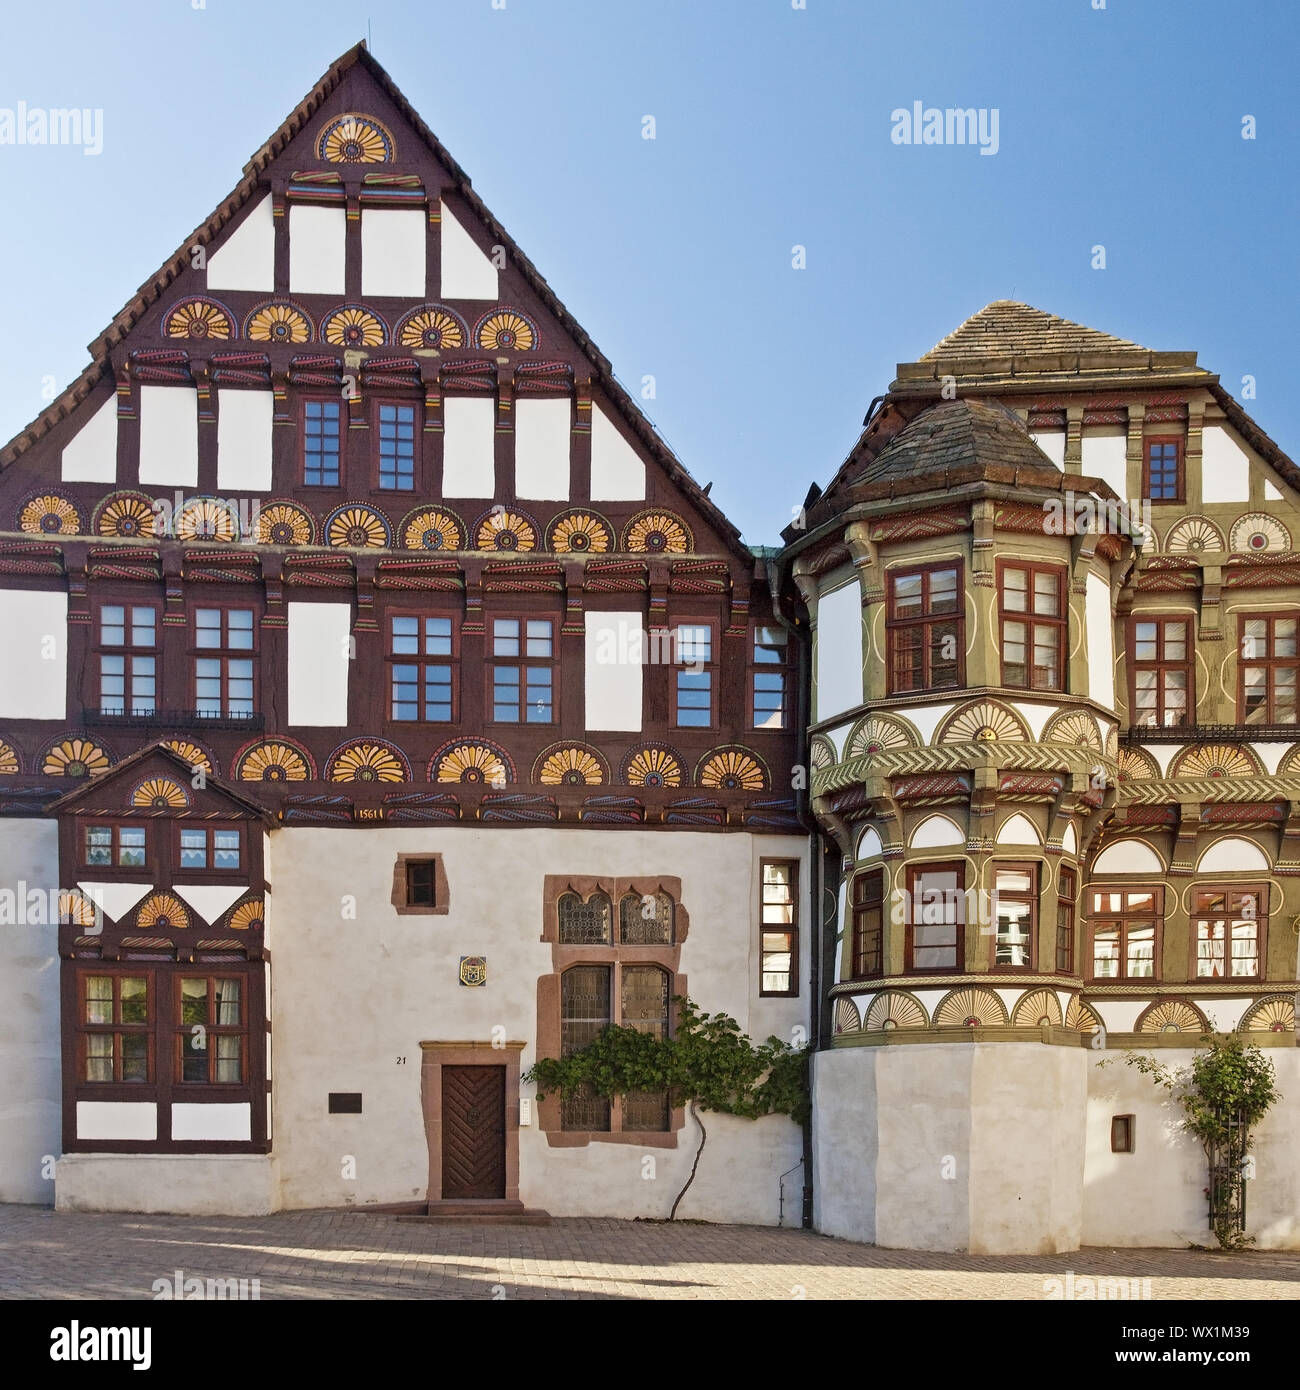 Dechanei, a struttura mista in legno e muratura doppia casa frontone, Hoexter, Renania settentrionale-Vestfalia, Germania, Europa Foto Stock